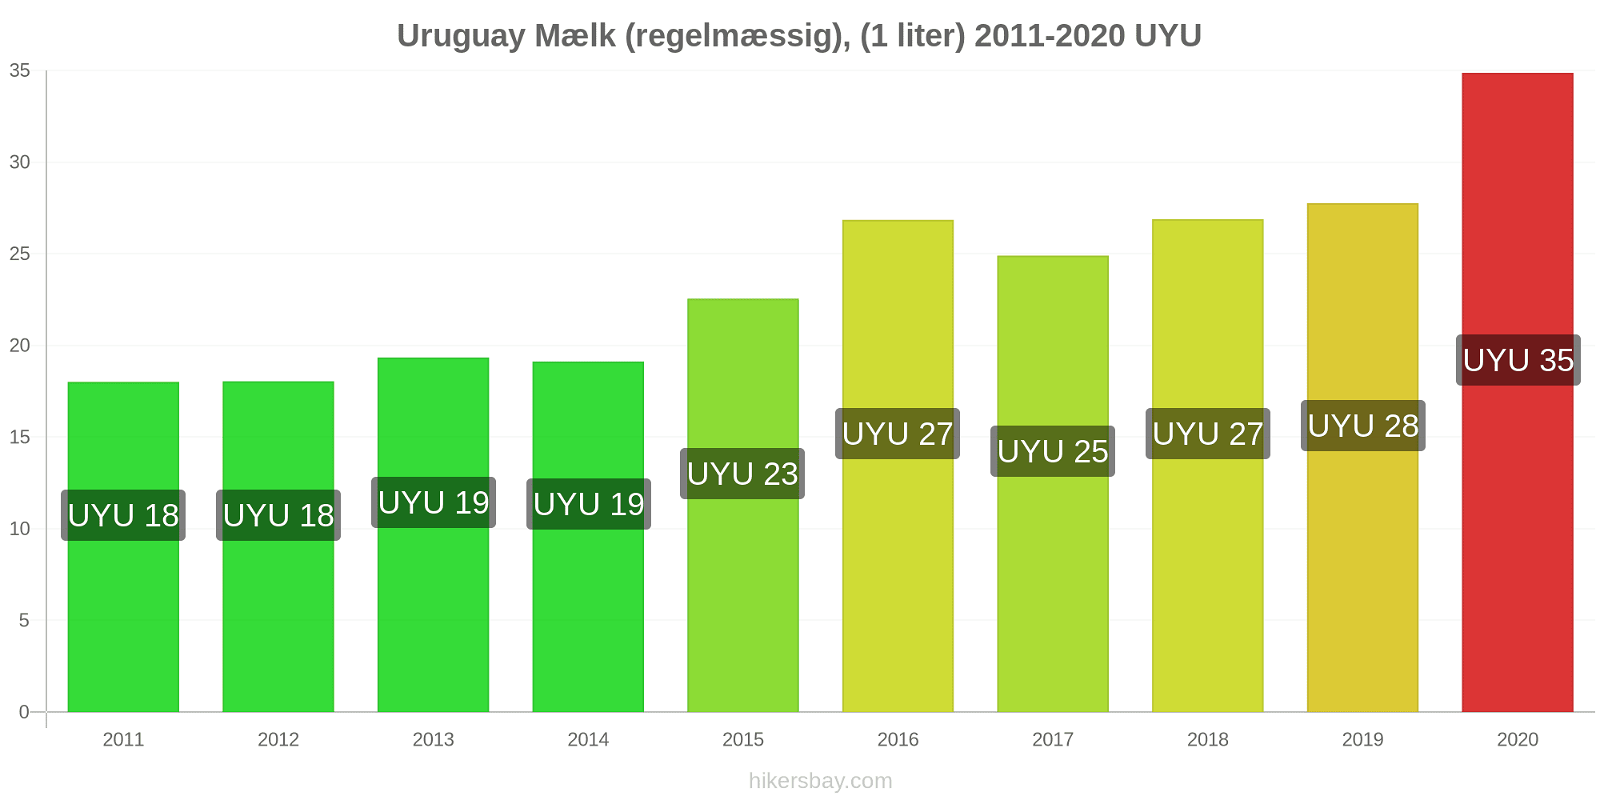 Uruguay prisændringer Mælk (regelmæssig), (1 liter) hikersbay.com